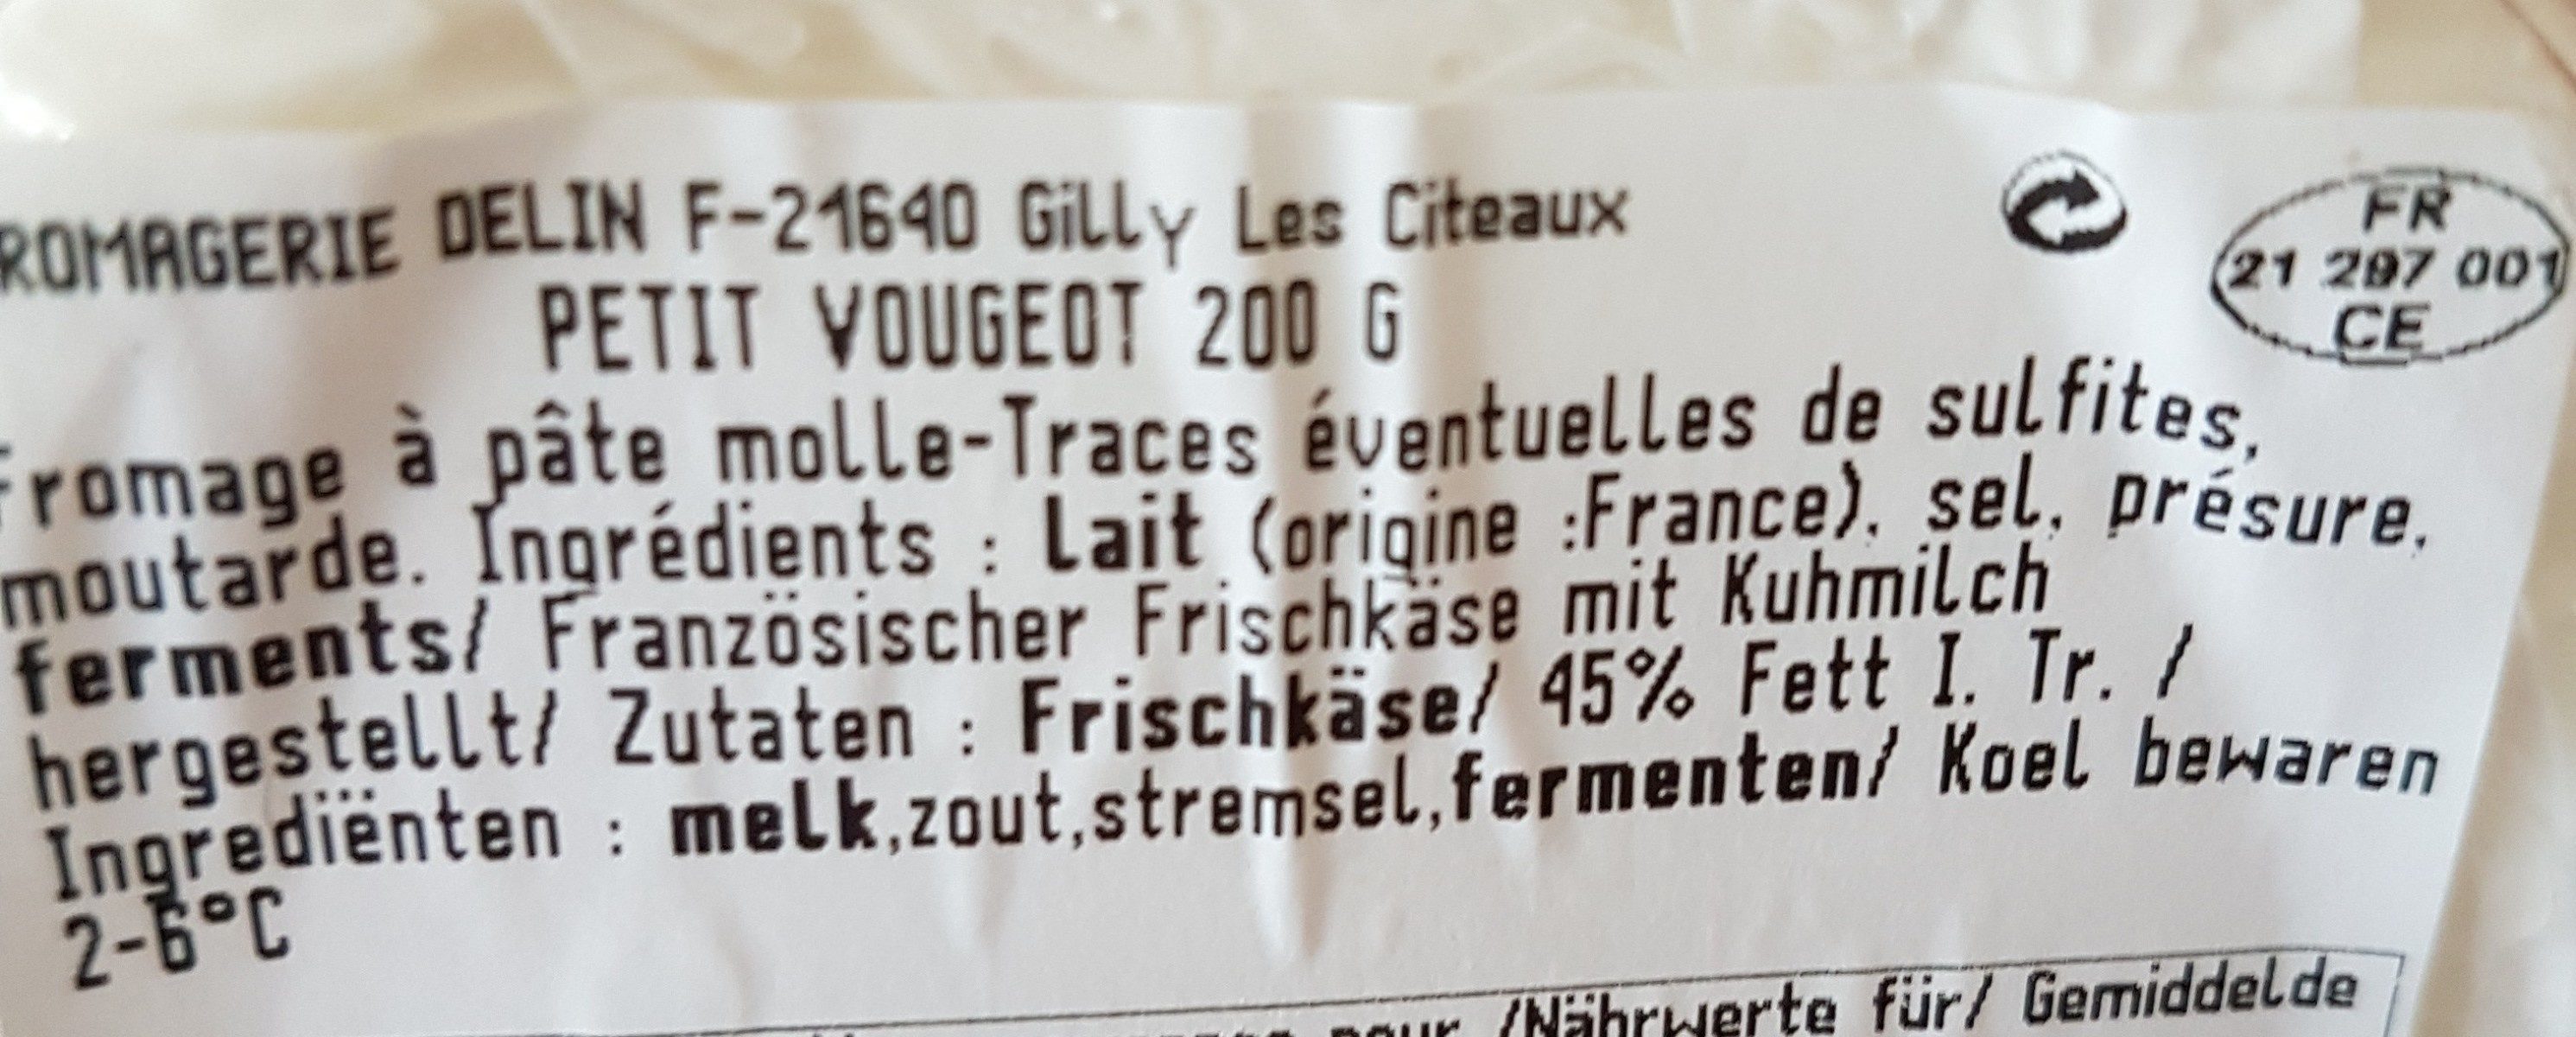 Fromage Le Petit Vougeot - Ingrédients